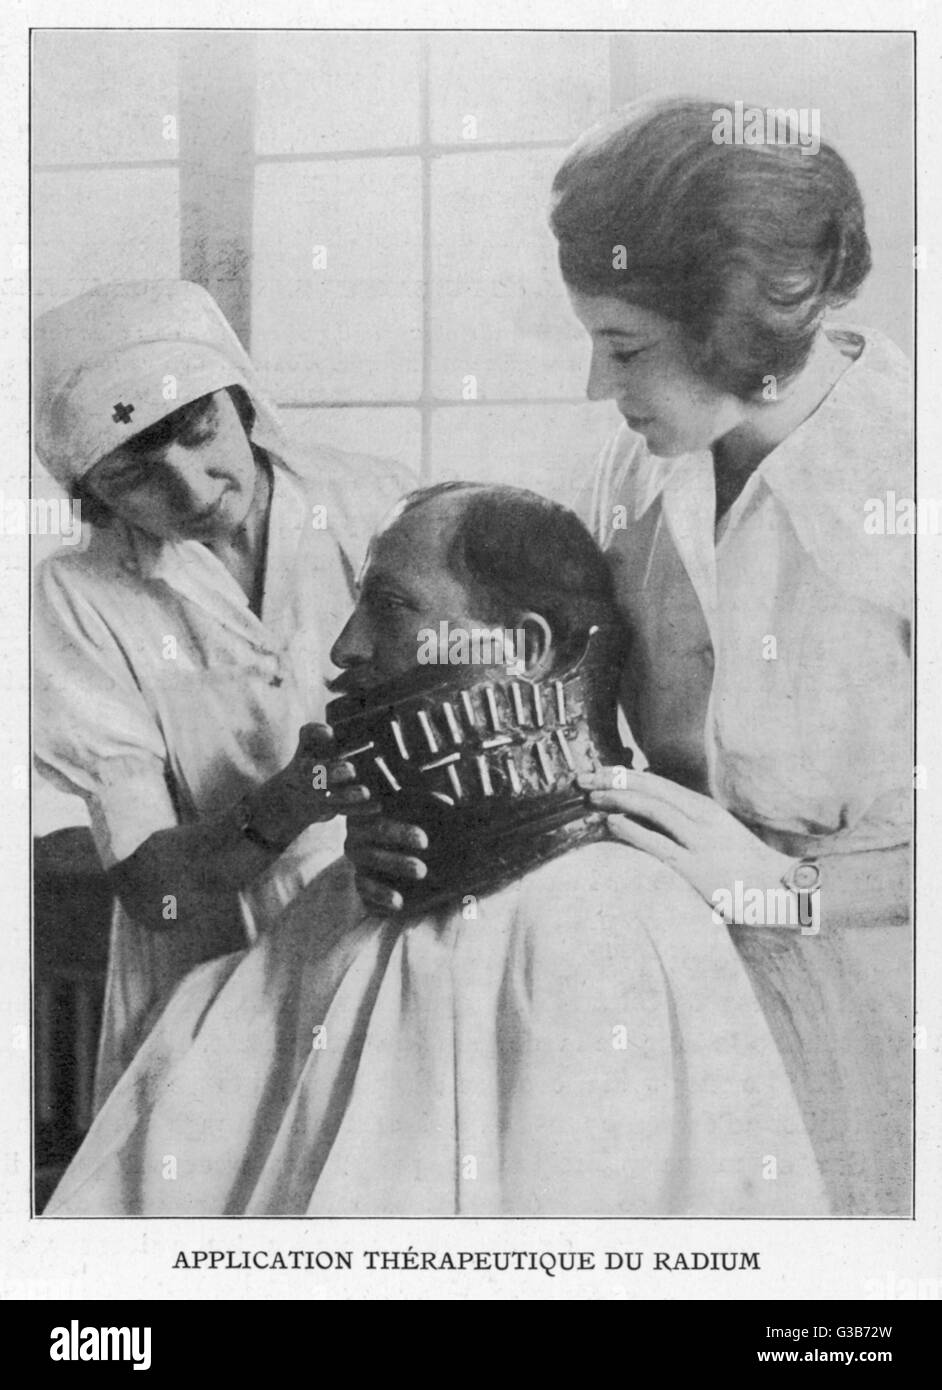 Un possible traitement contre le cancer : tubes contenant de petites sommeille de radium sont placés à proximité de la partie touchée... Date : 1926 Banque D'Images